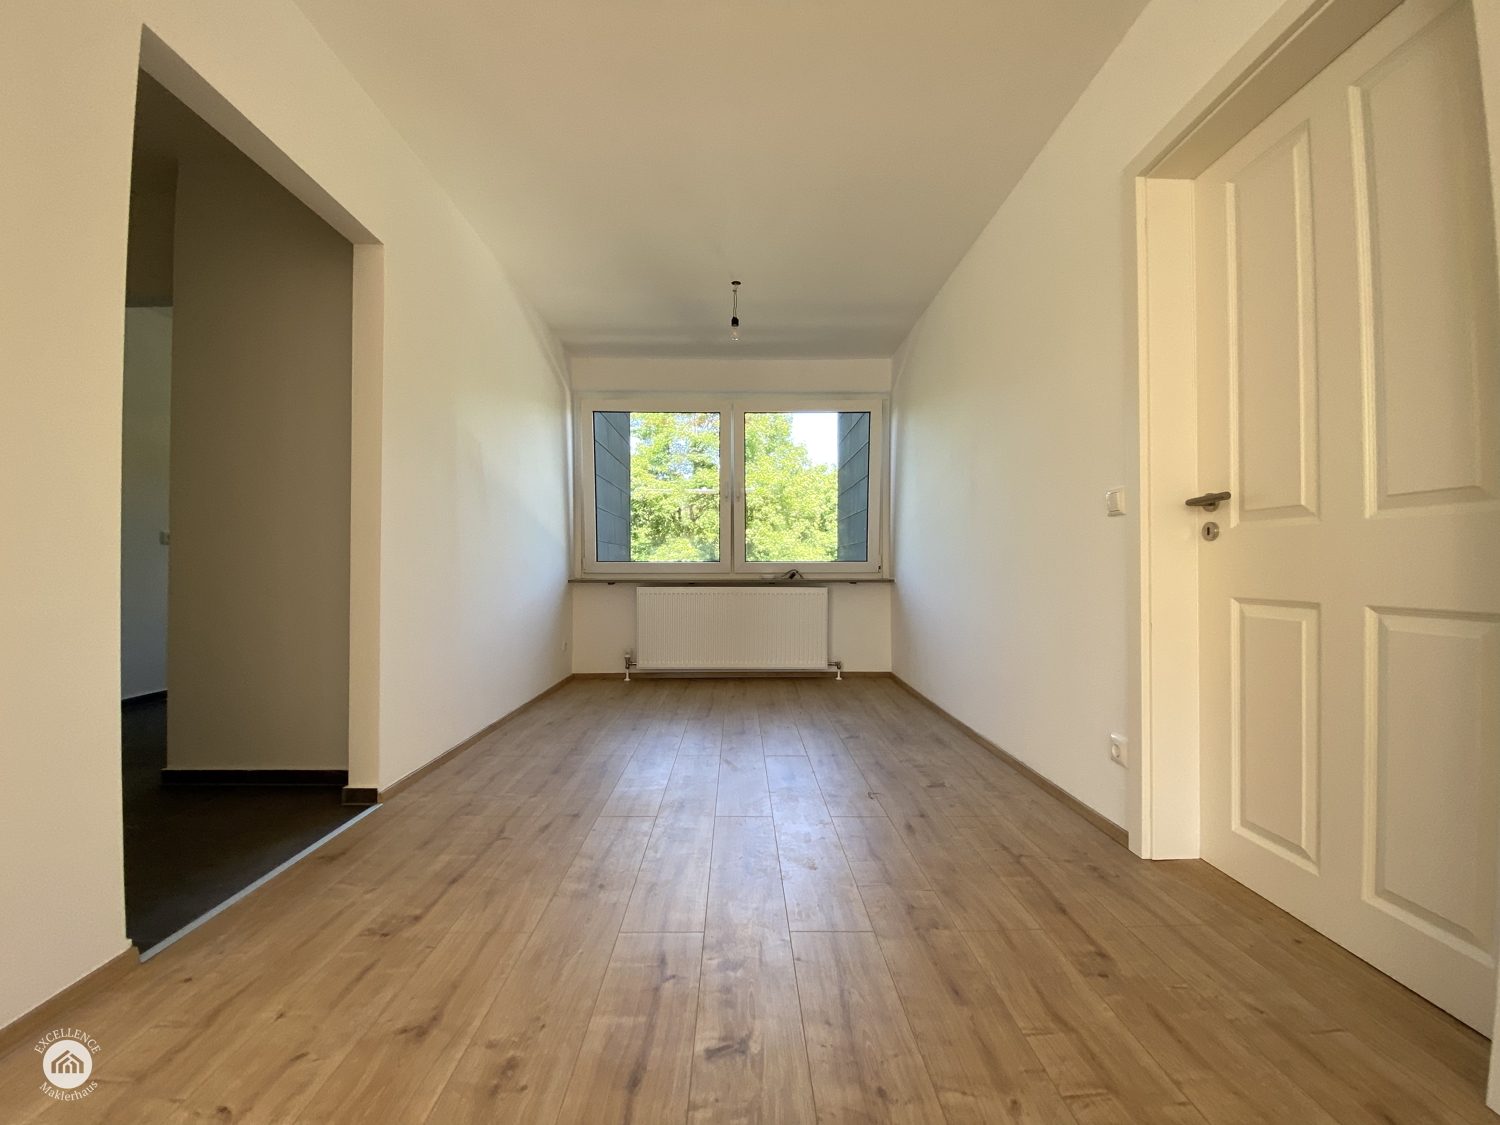 Immobilienangebot - Ulm - Alle - Renovierte Dreizimmerwohnung ohne Käuferprovision - ideal zur Kapitalanlage